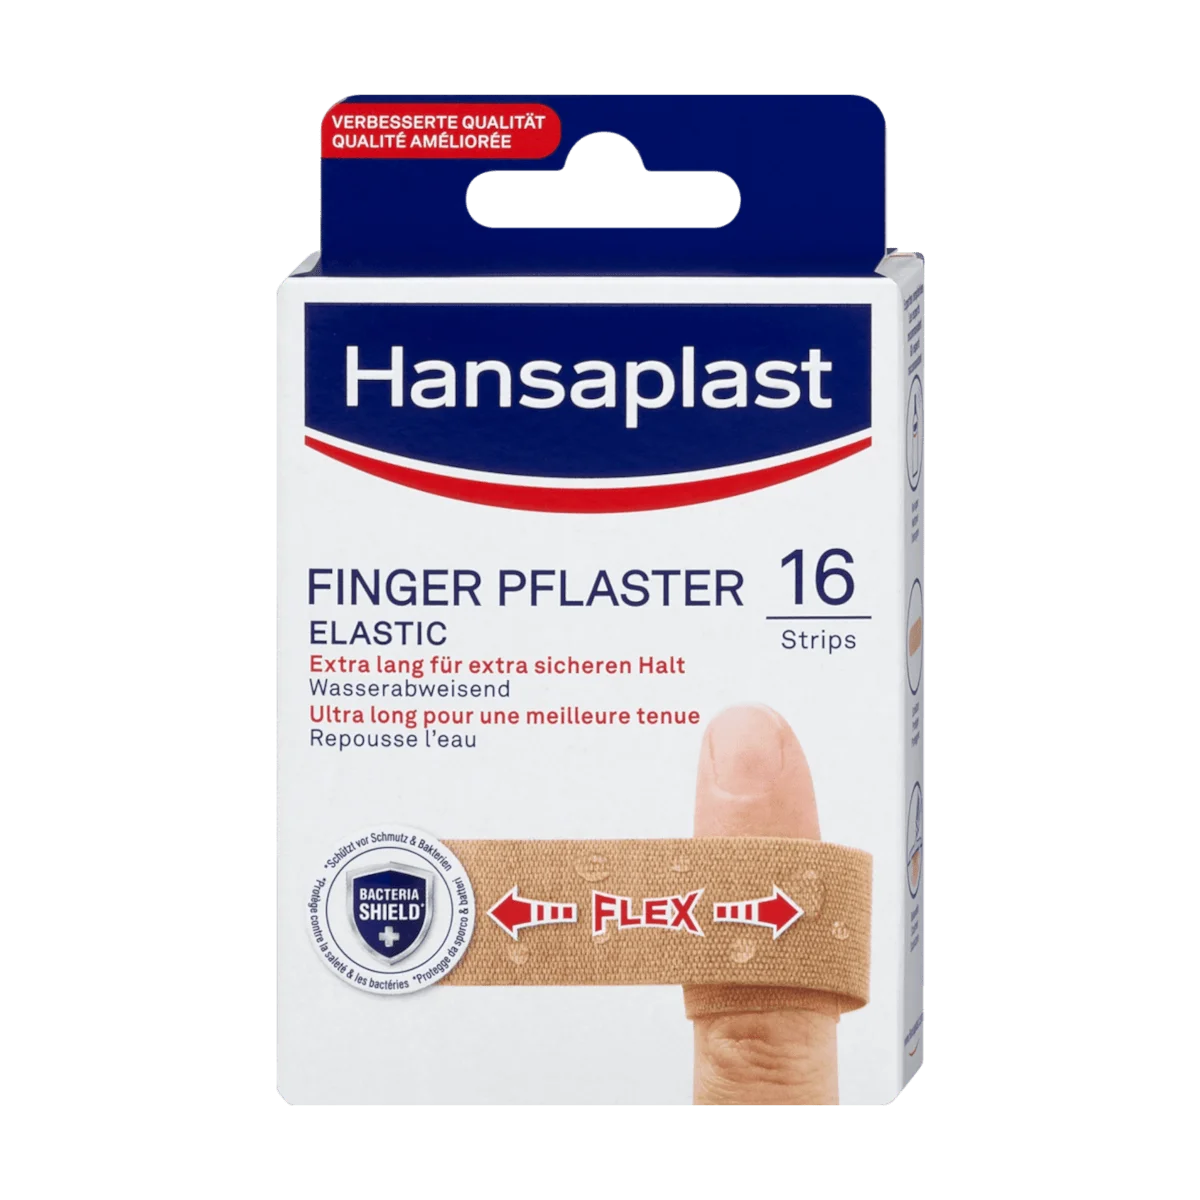 Hansaplast Fingerplaster elastic, 16 Stk. online kaufen